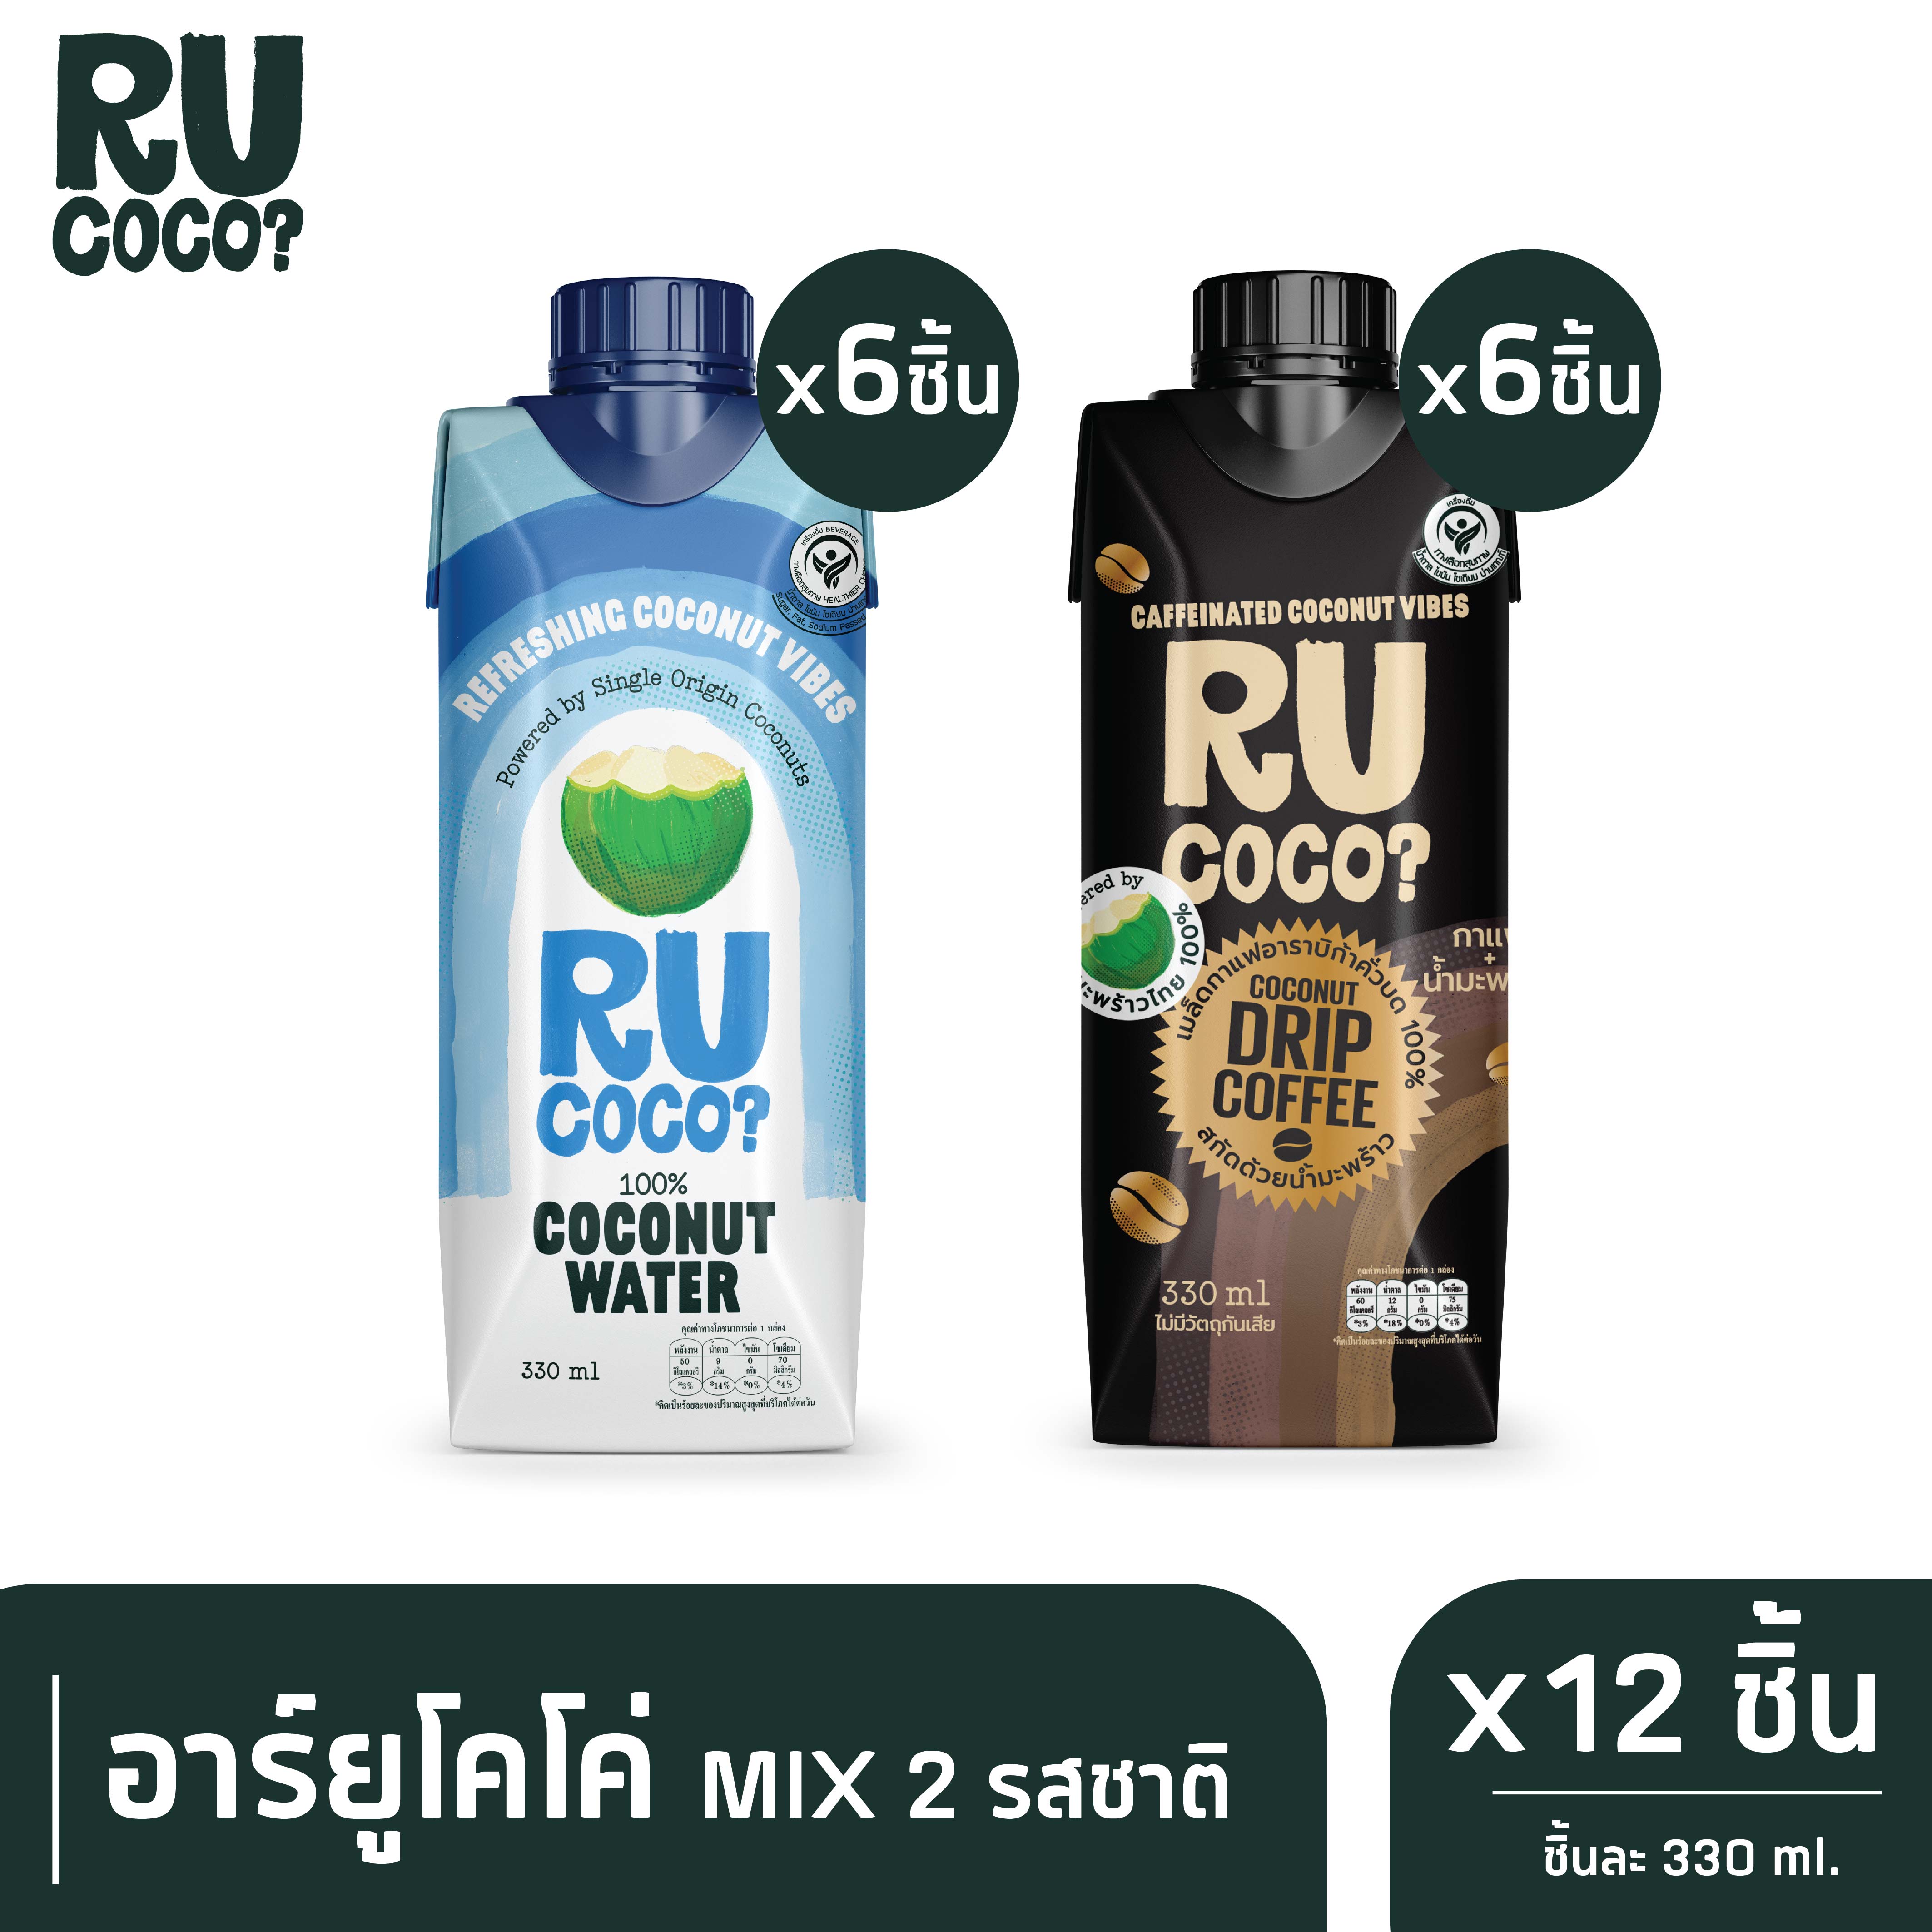 R U COCO อาร์ยูโคโค่ MIX น้ำมะพร้าวแท้ 100% 6 กล่อง และ แบล็คคอฟฟี่โคโค่นัท 6 กล่อง